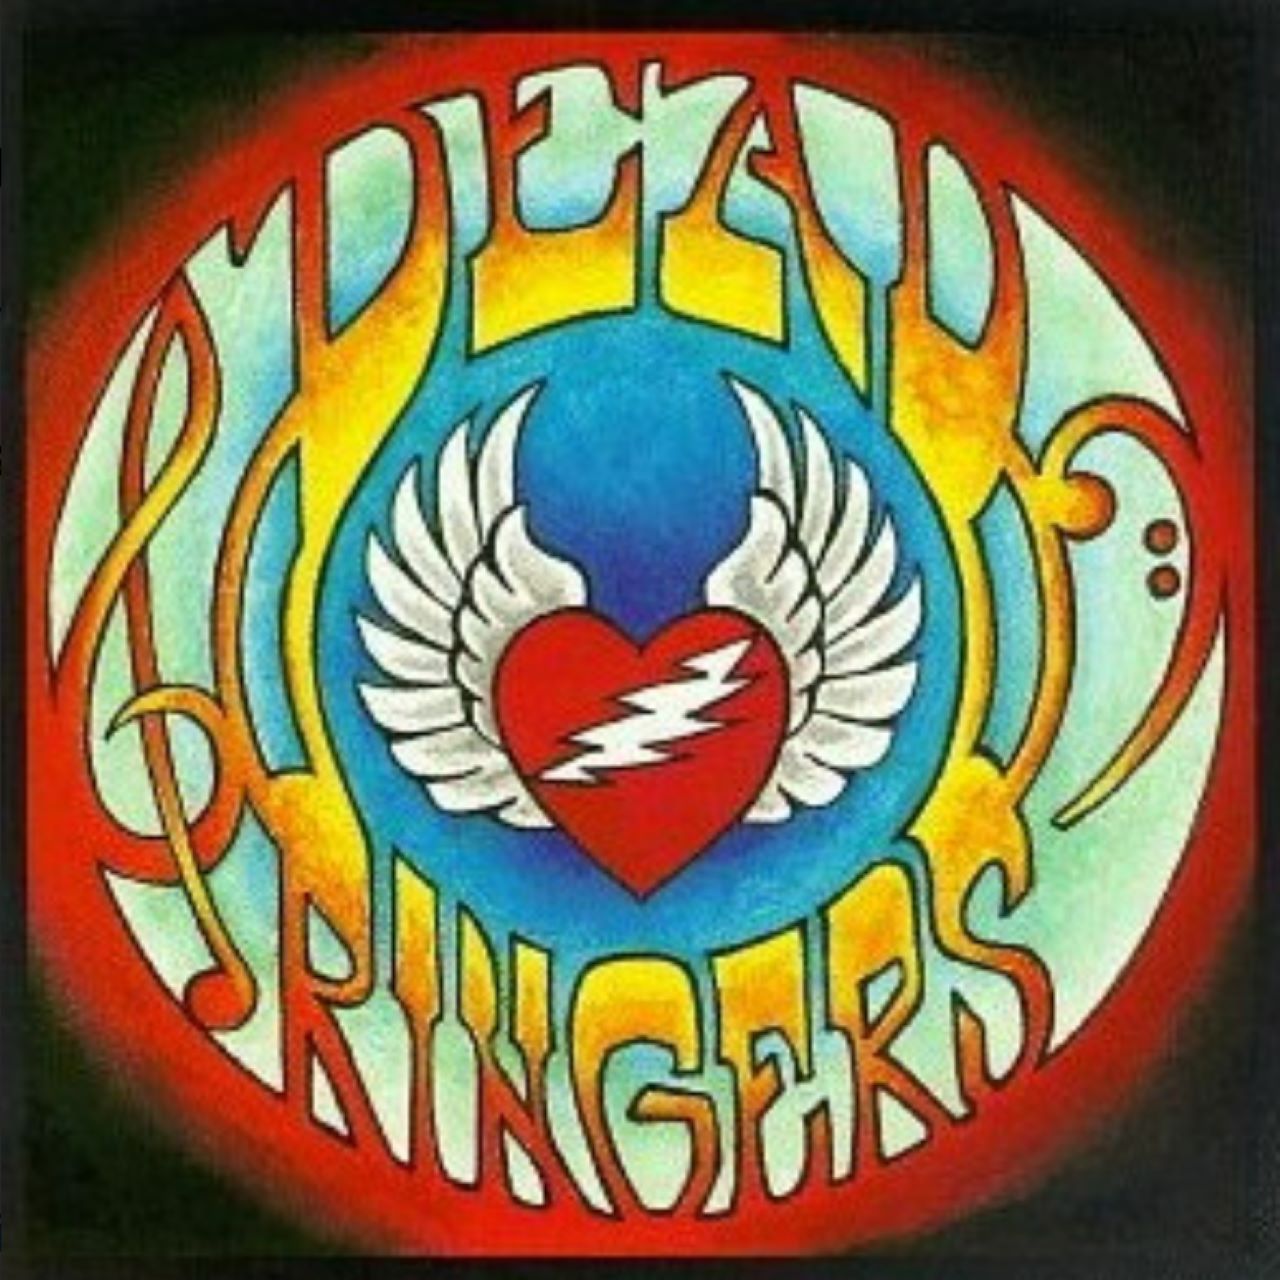 Dead Ringers – Dead Ringers cover album